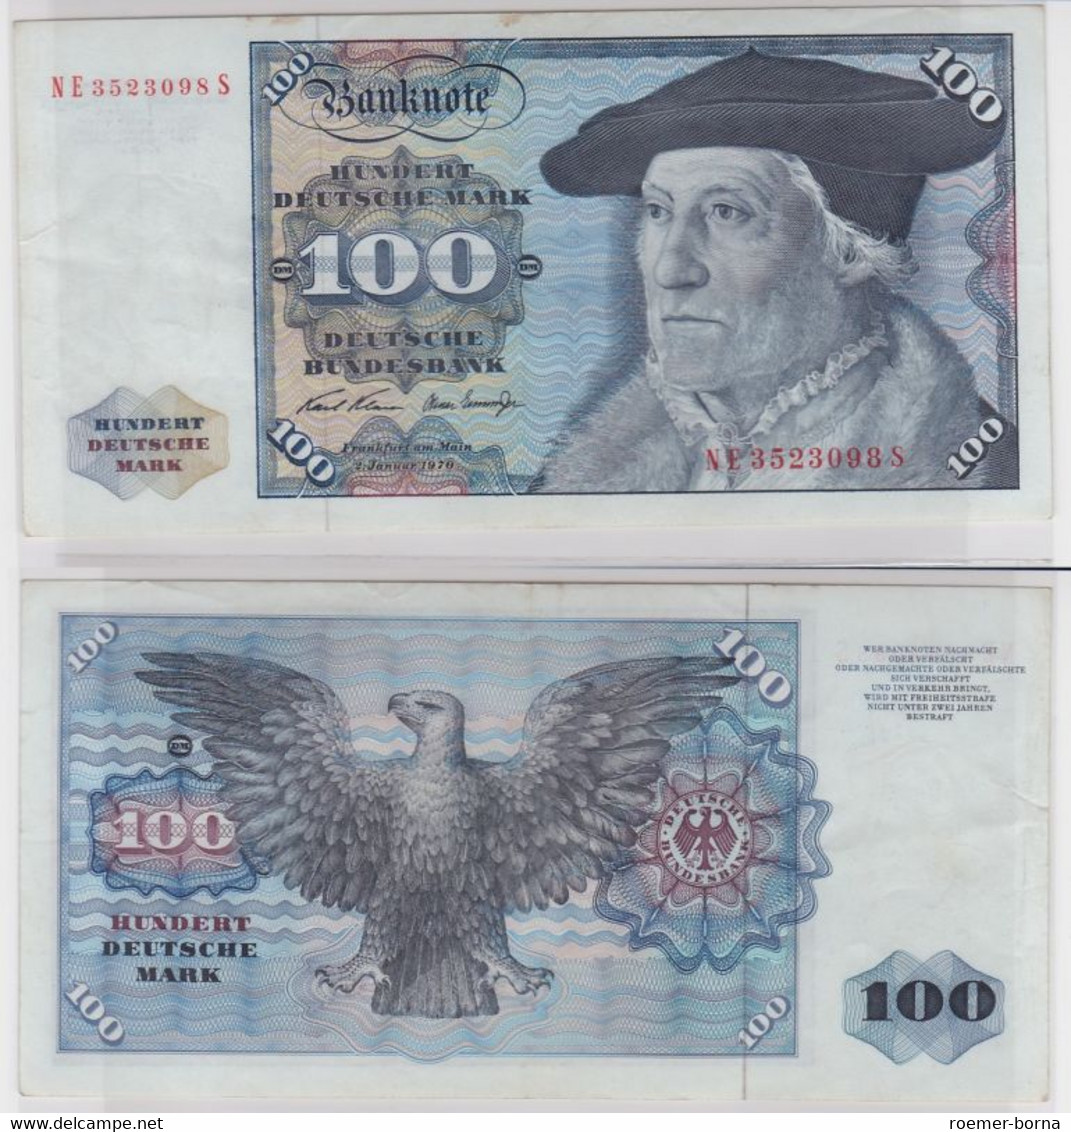 T146362 Banknote 100 DM Deutsche Mark Ro. 273b Schein 2.Jan 1970 KN NE 3523098 S - 100 DM